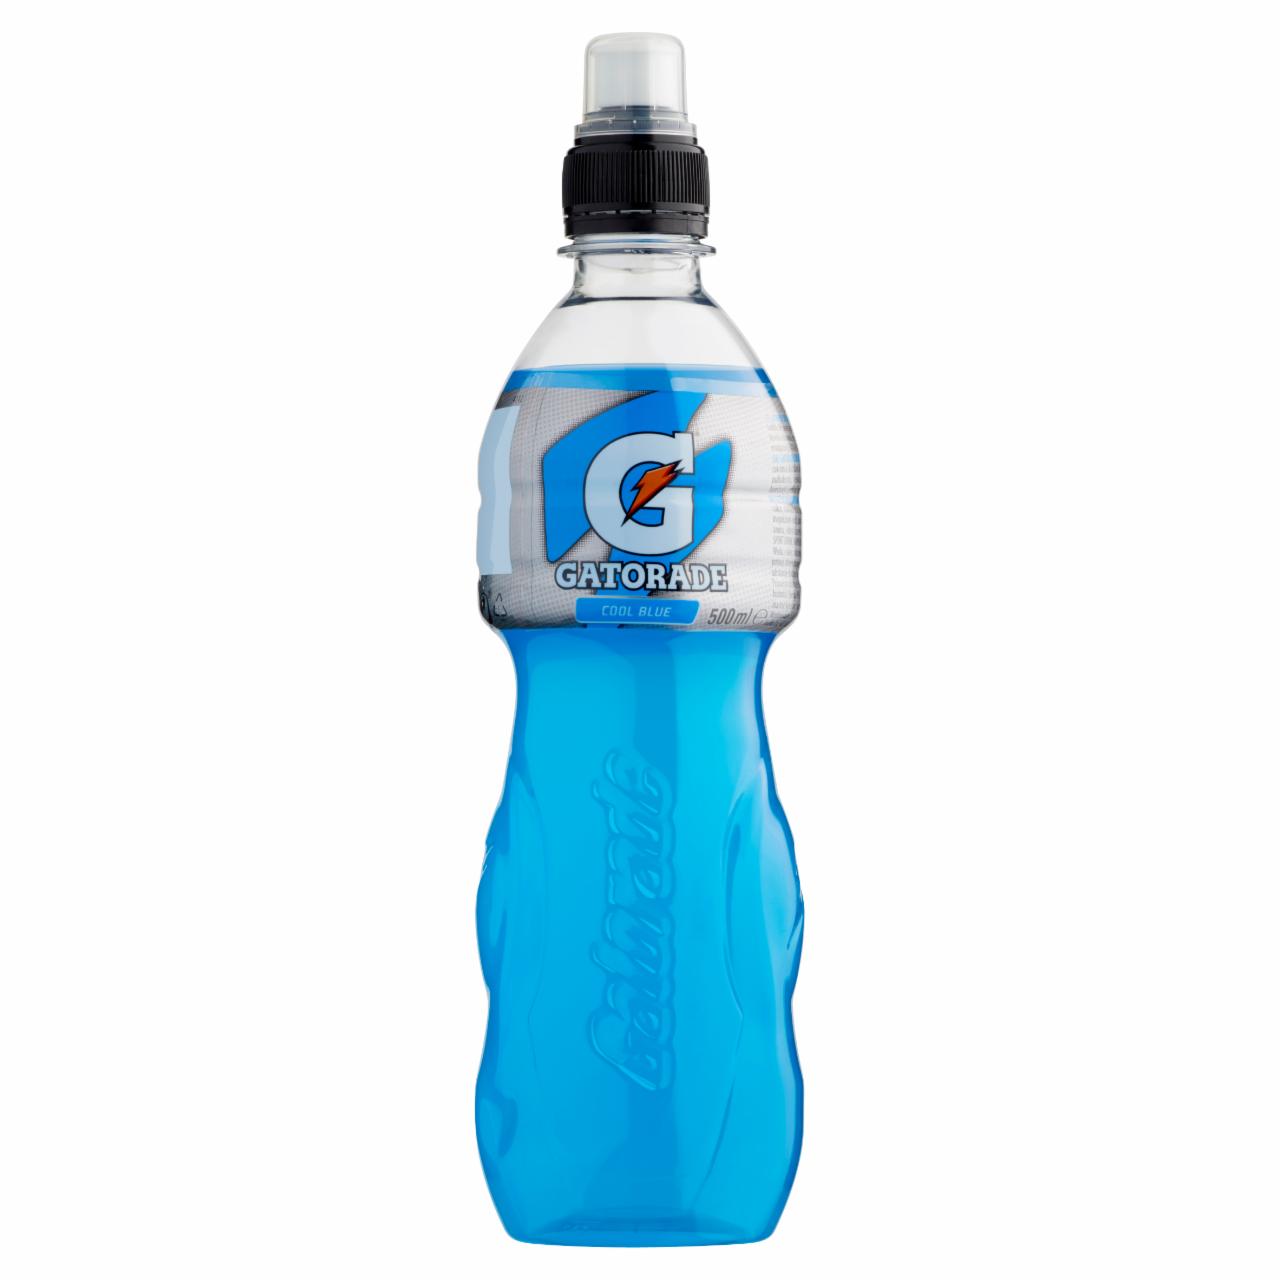 Képek - Gatorade Cool Blue szénsavmentes málnaízű izotóniás sportital cukorral és édesítőszerekkel 500 ml